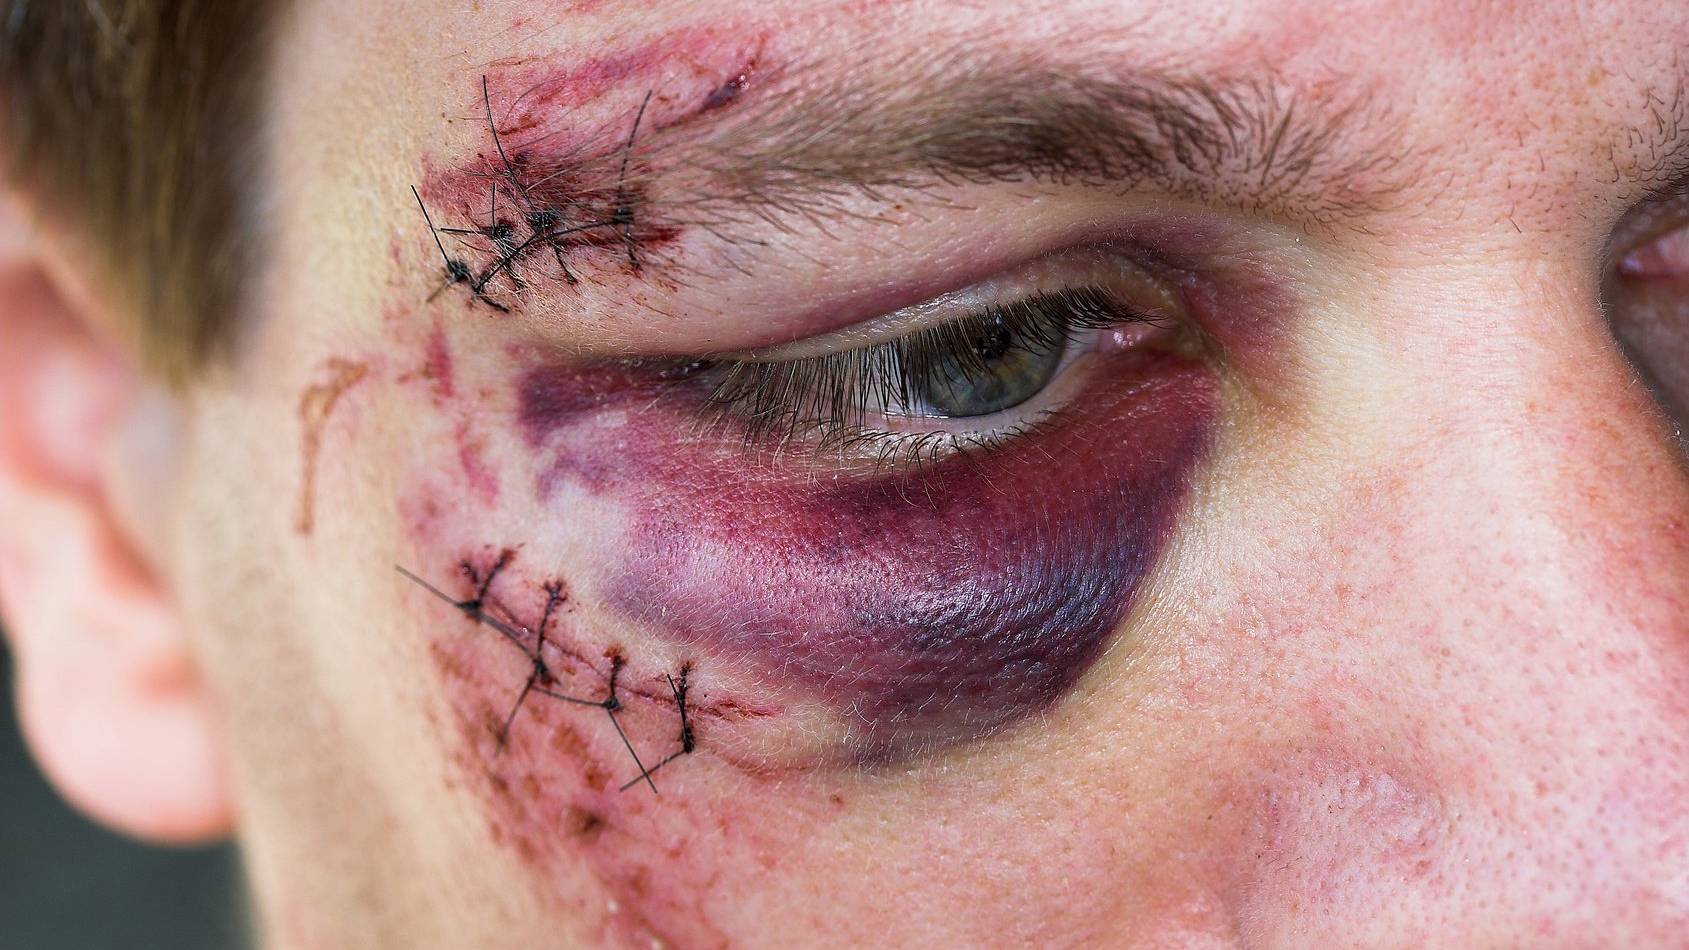 Symbolbild: Der verunfallte Velofahrer musste wegen Verletzungen im Gesicht ins Spital.